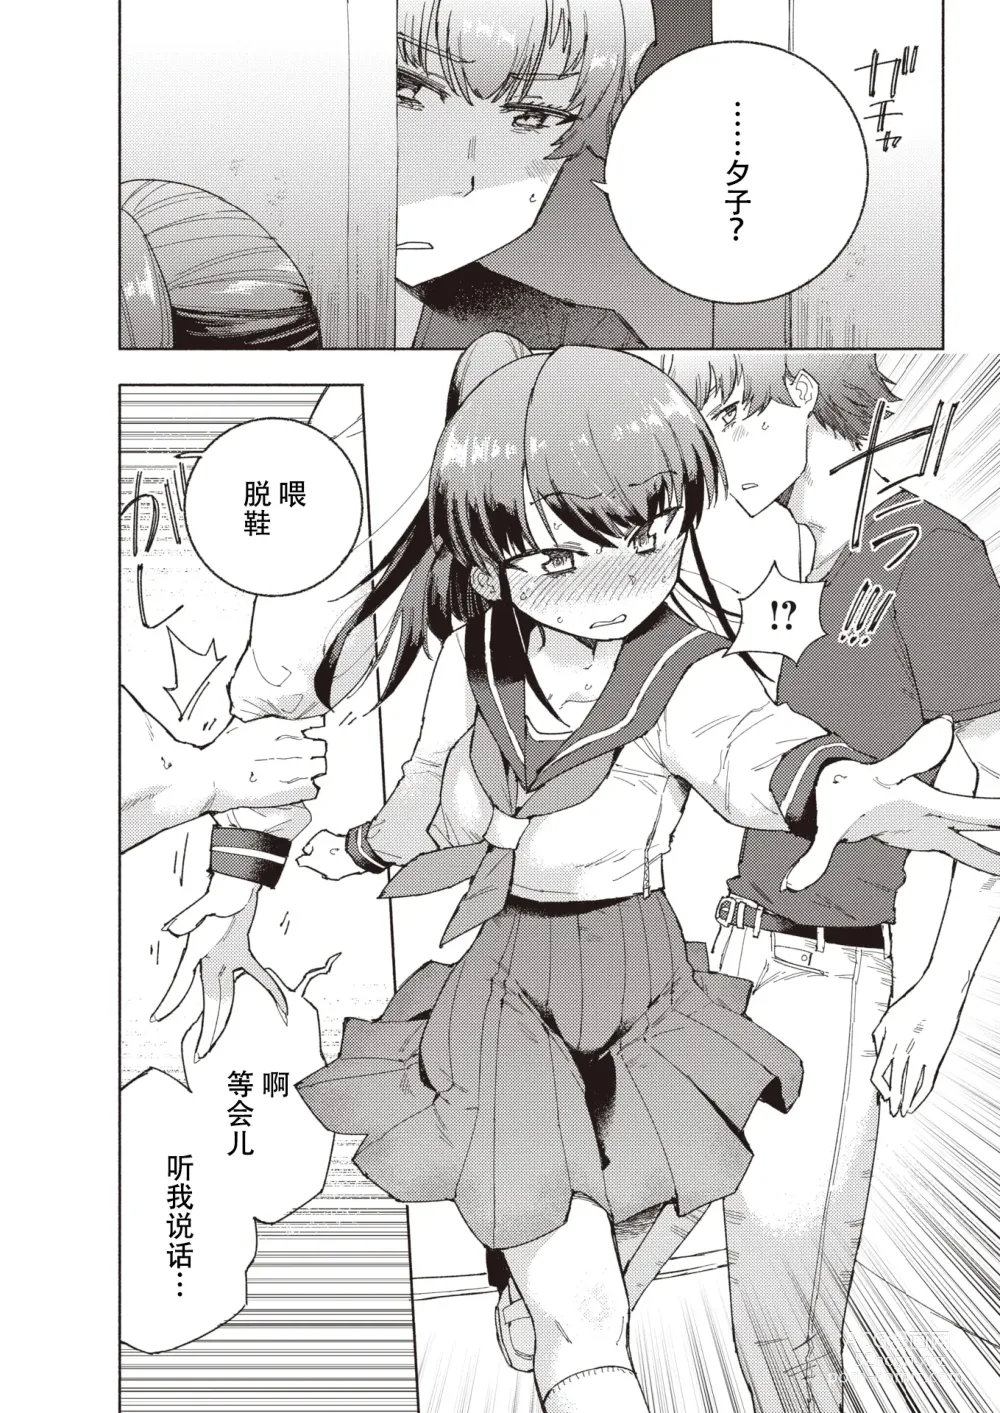 Page 2 of manga 标记